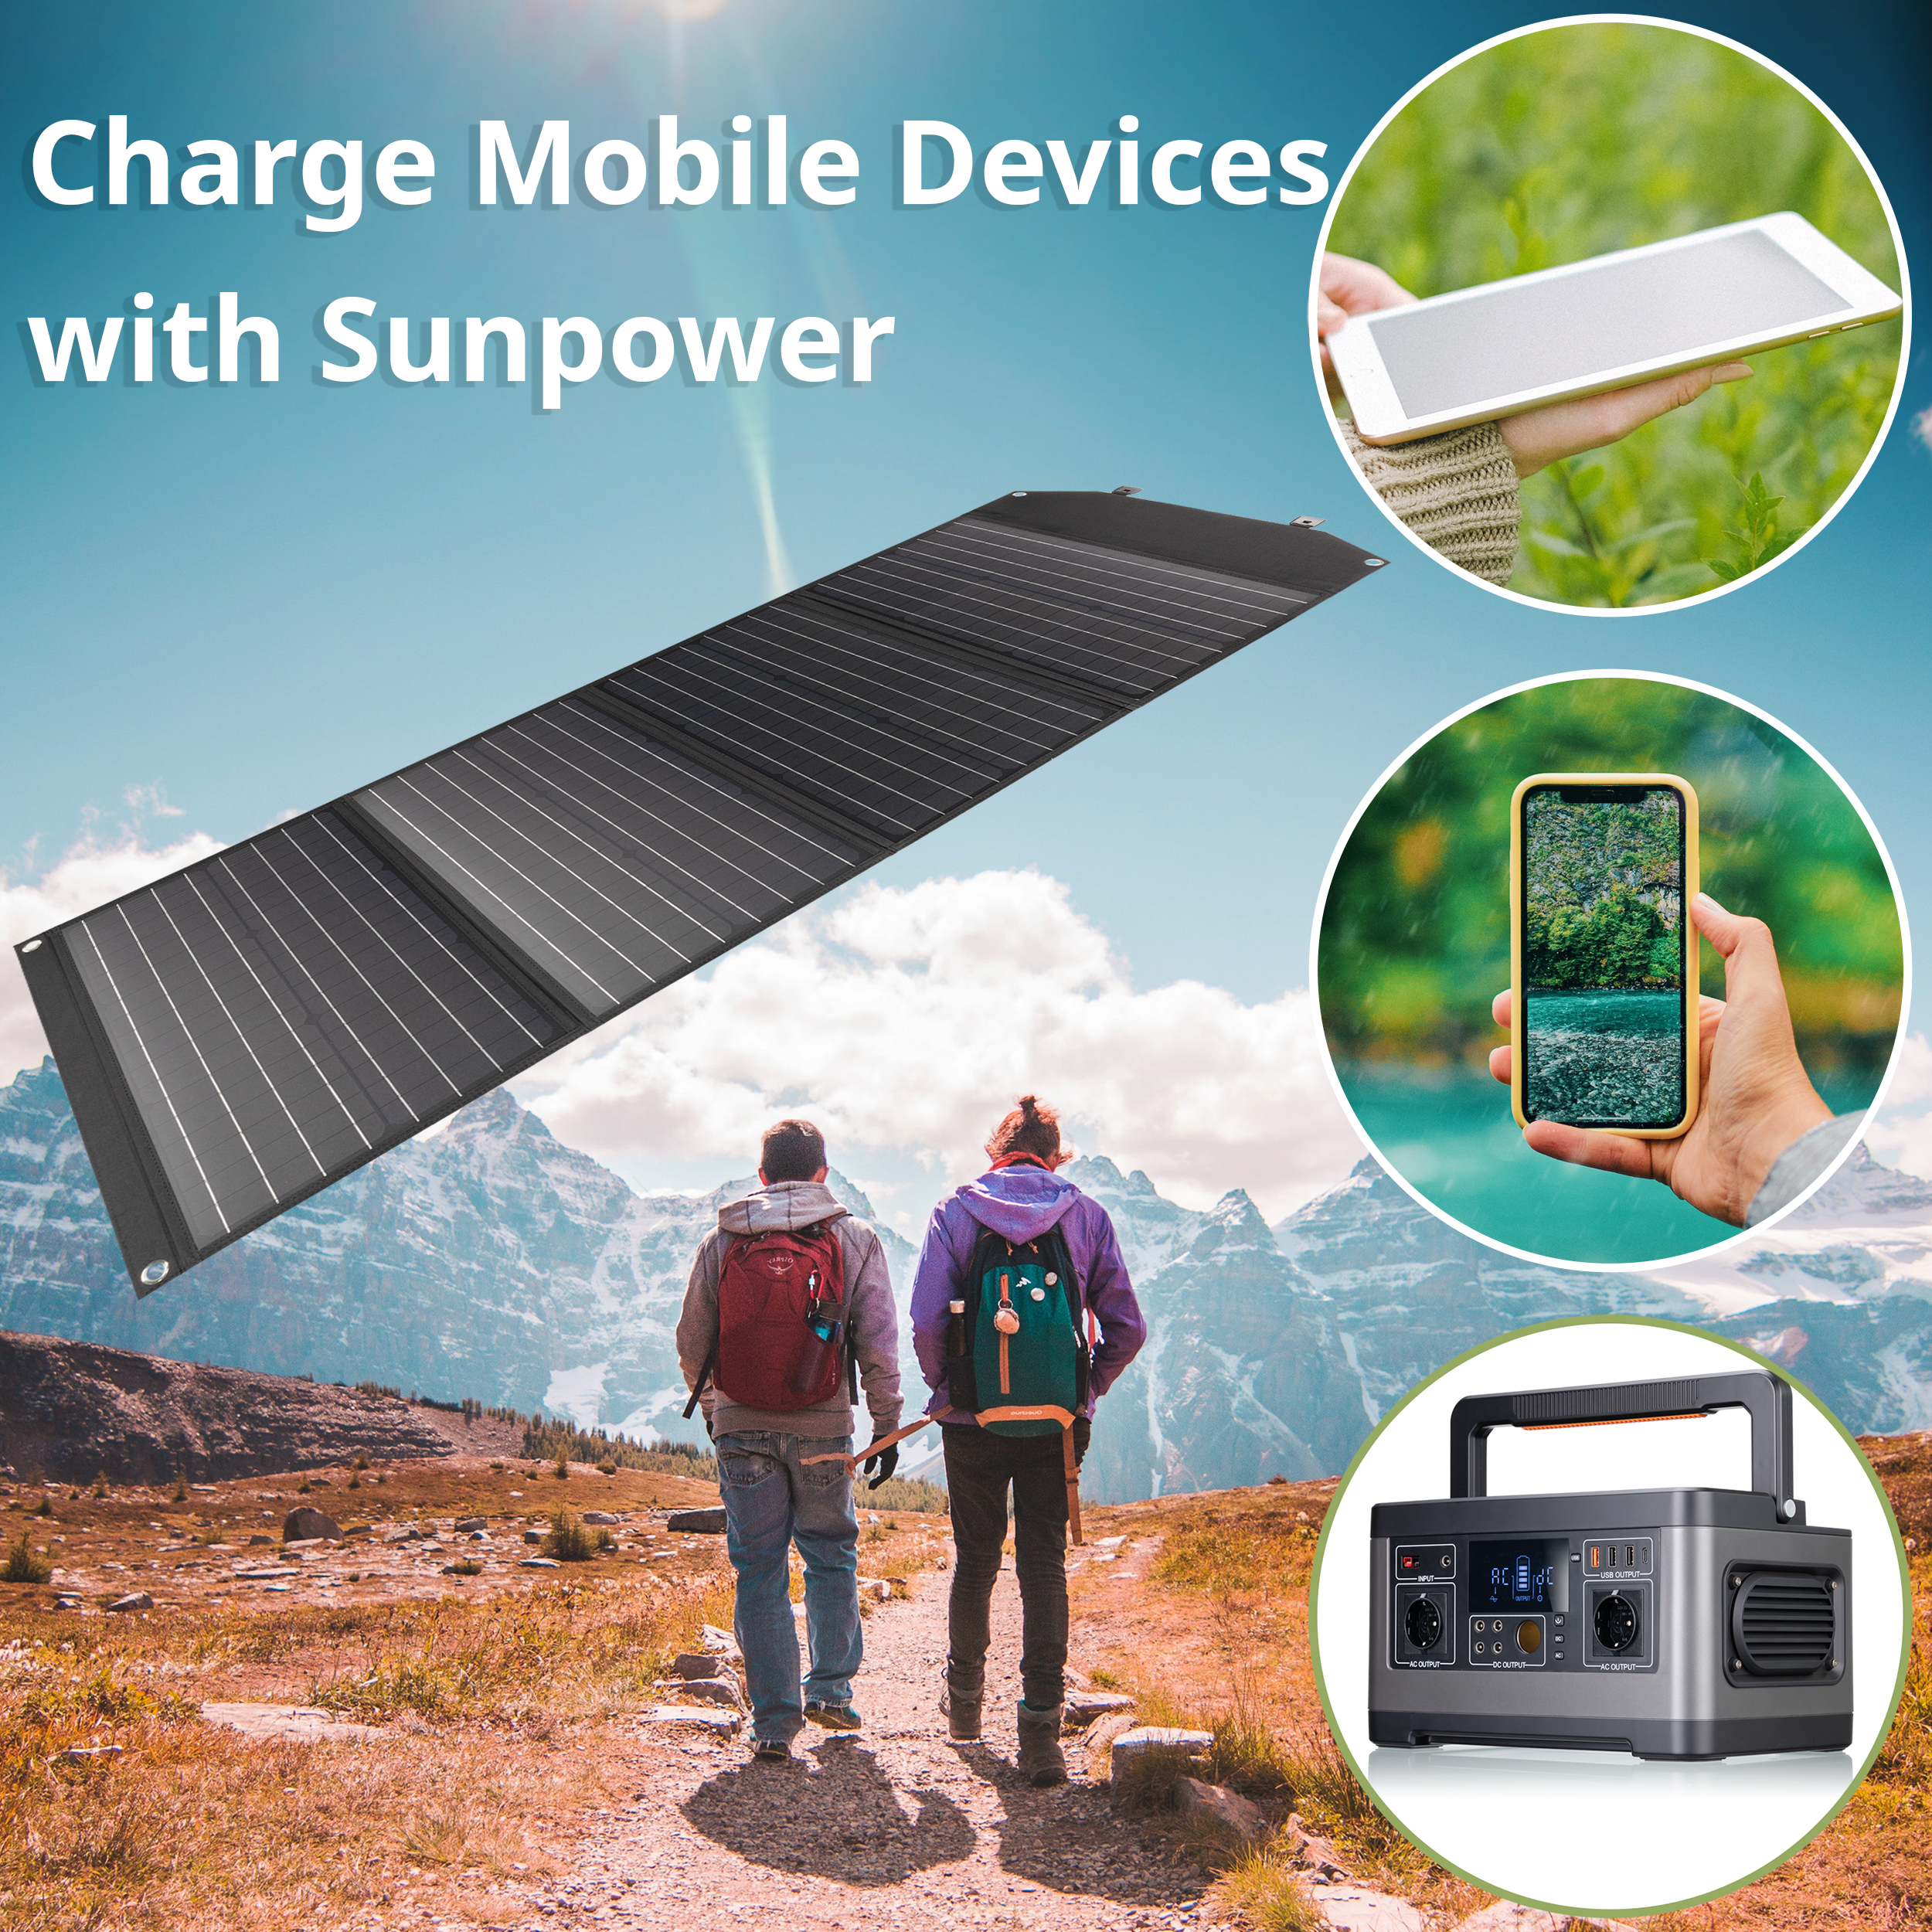 Cargador solar USB de 10 vatios Arc | Alimenta teléfonos, tabletas y más |  Carga tu dispositivo tan rápido como en casa